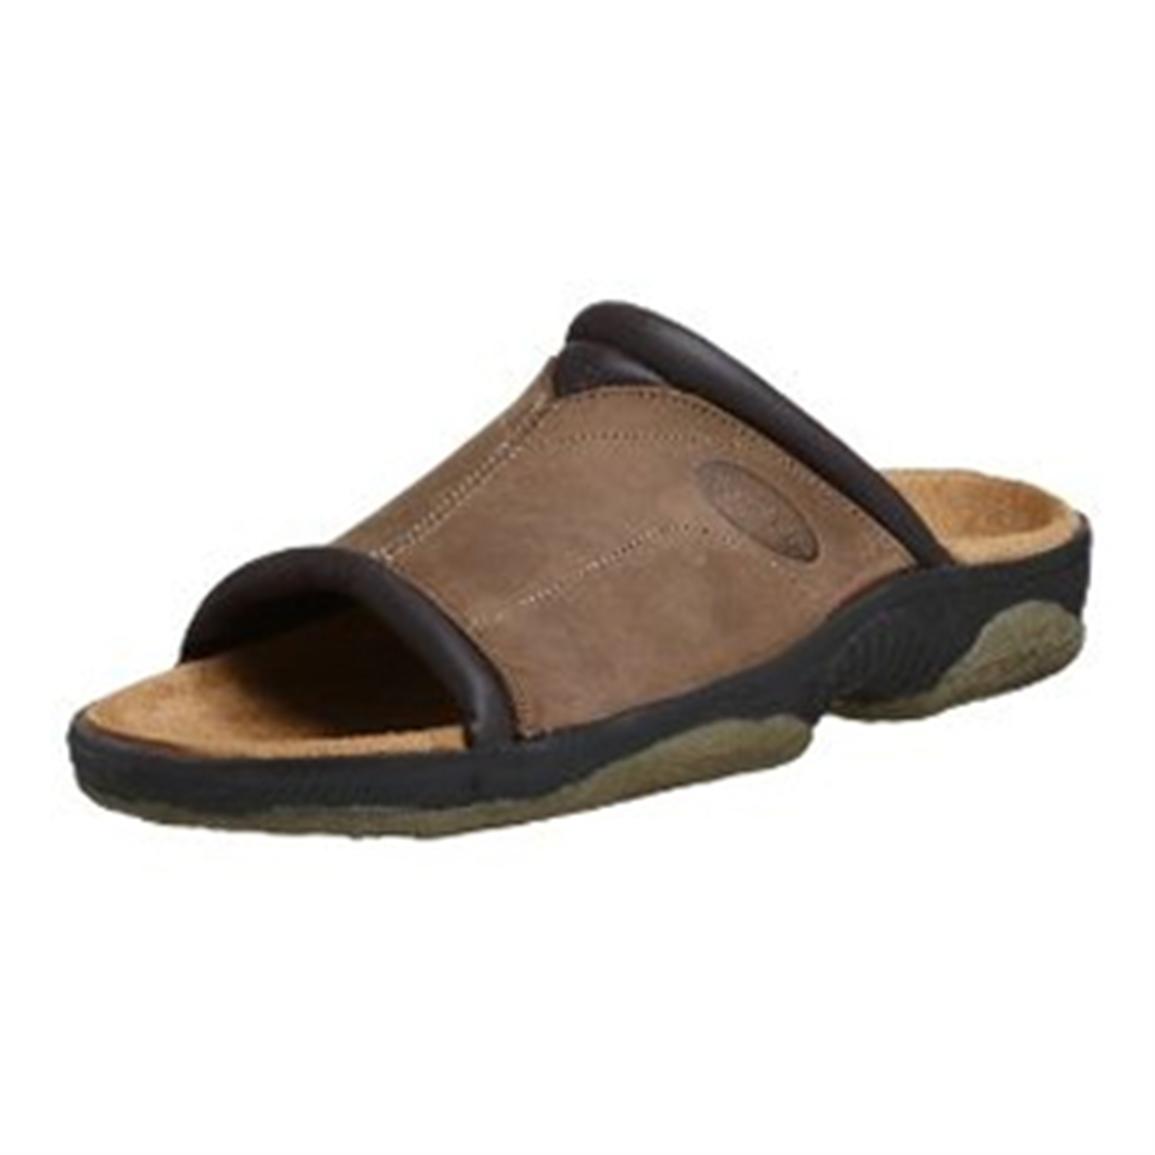 Men's Maui Surf® Cruise Sandals 183256, Sandals & Flip